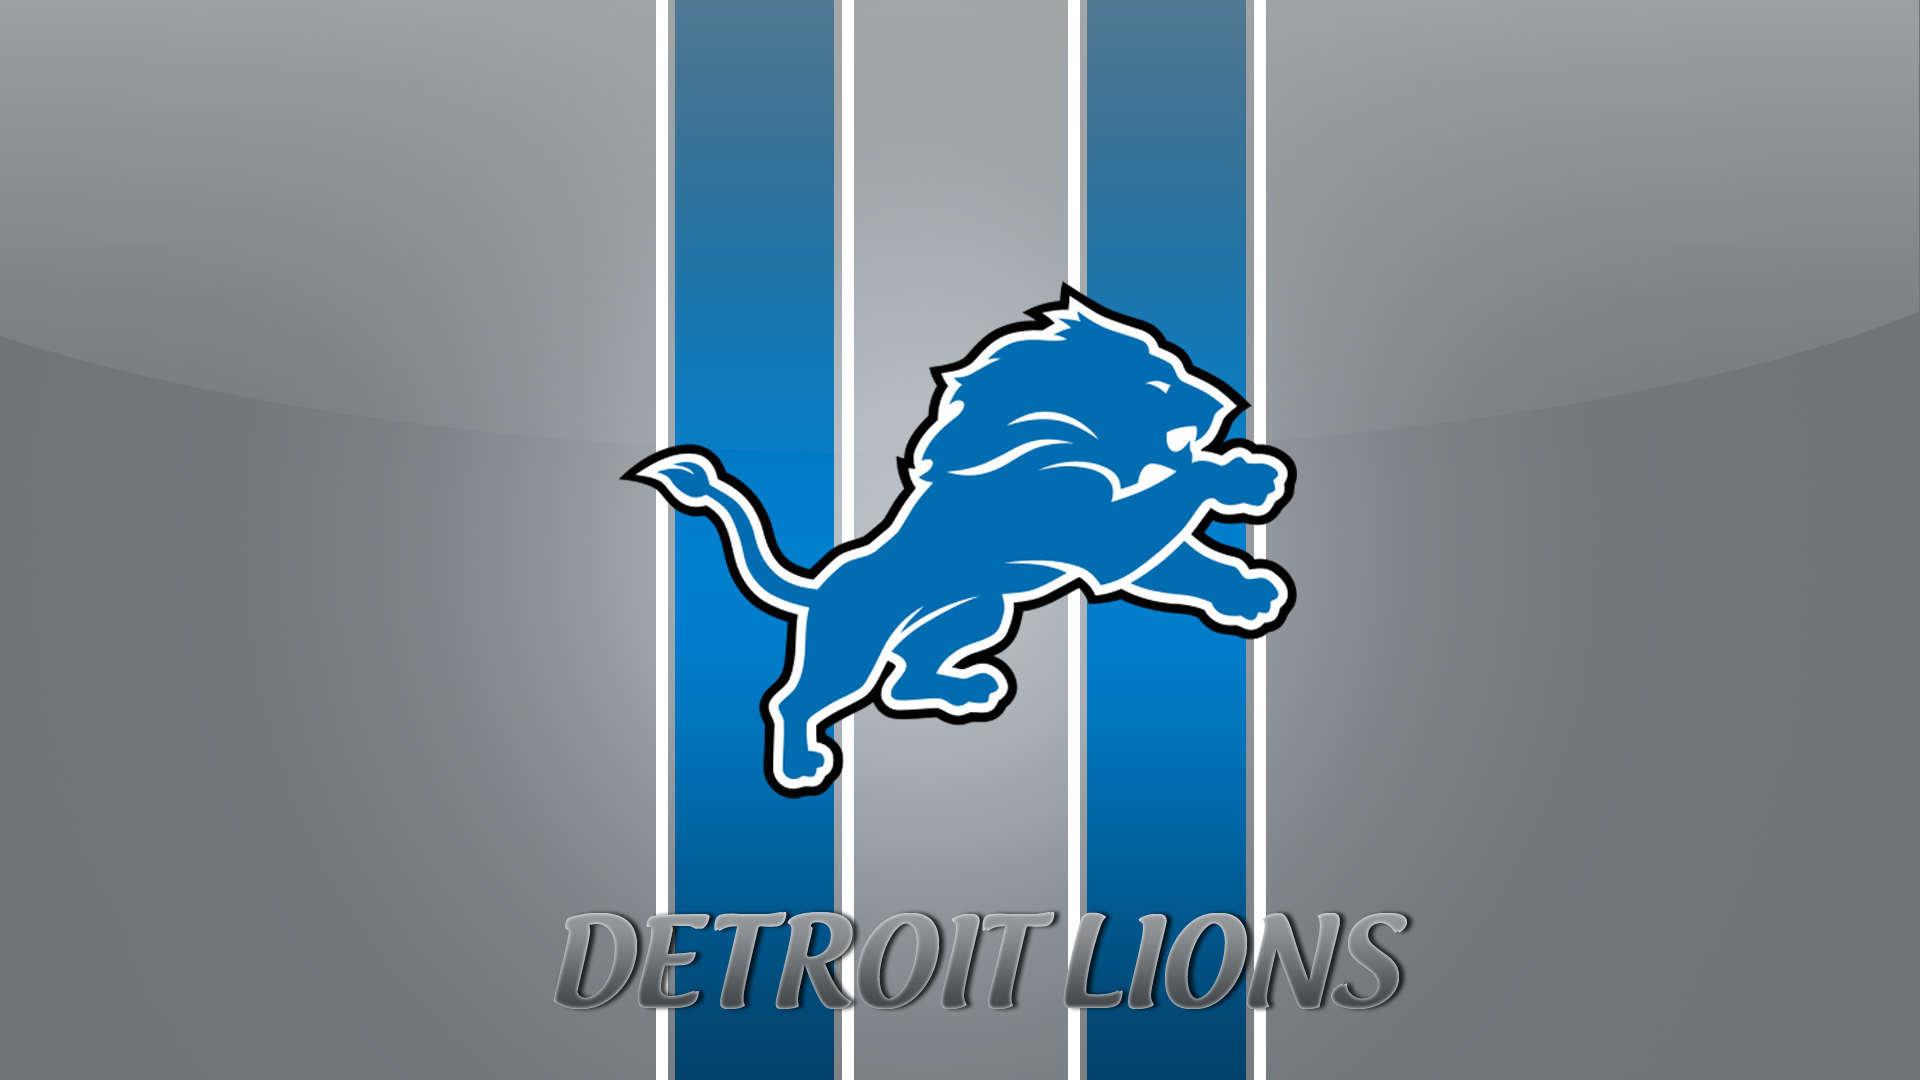 Detroit Lions Image